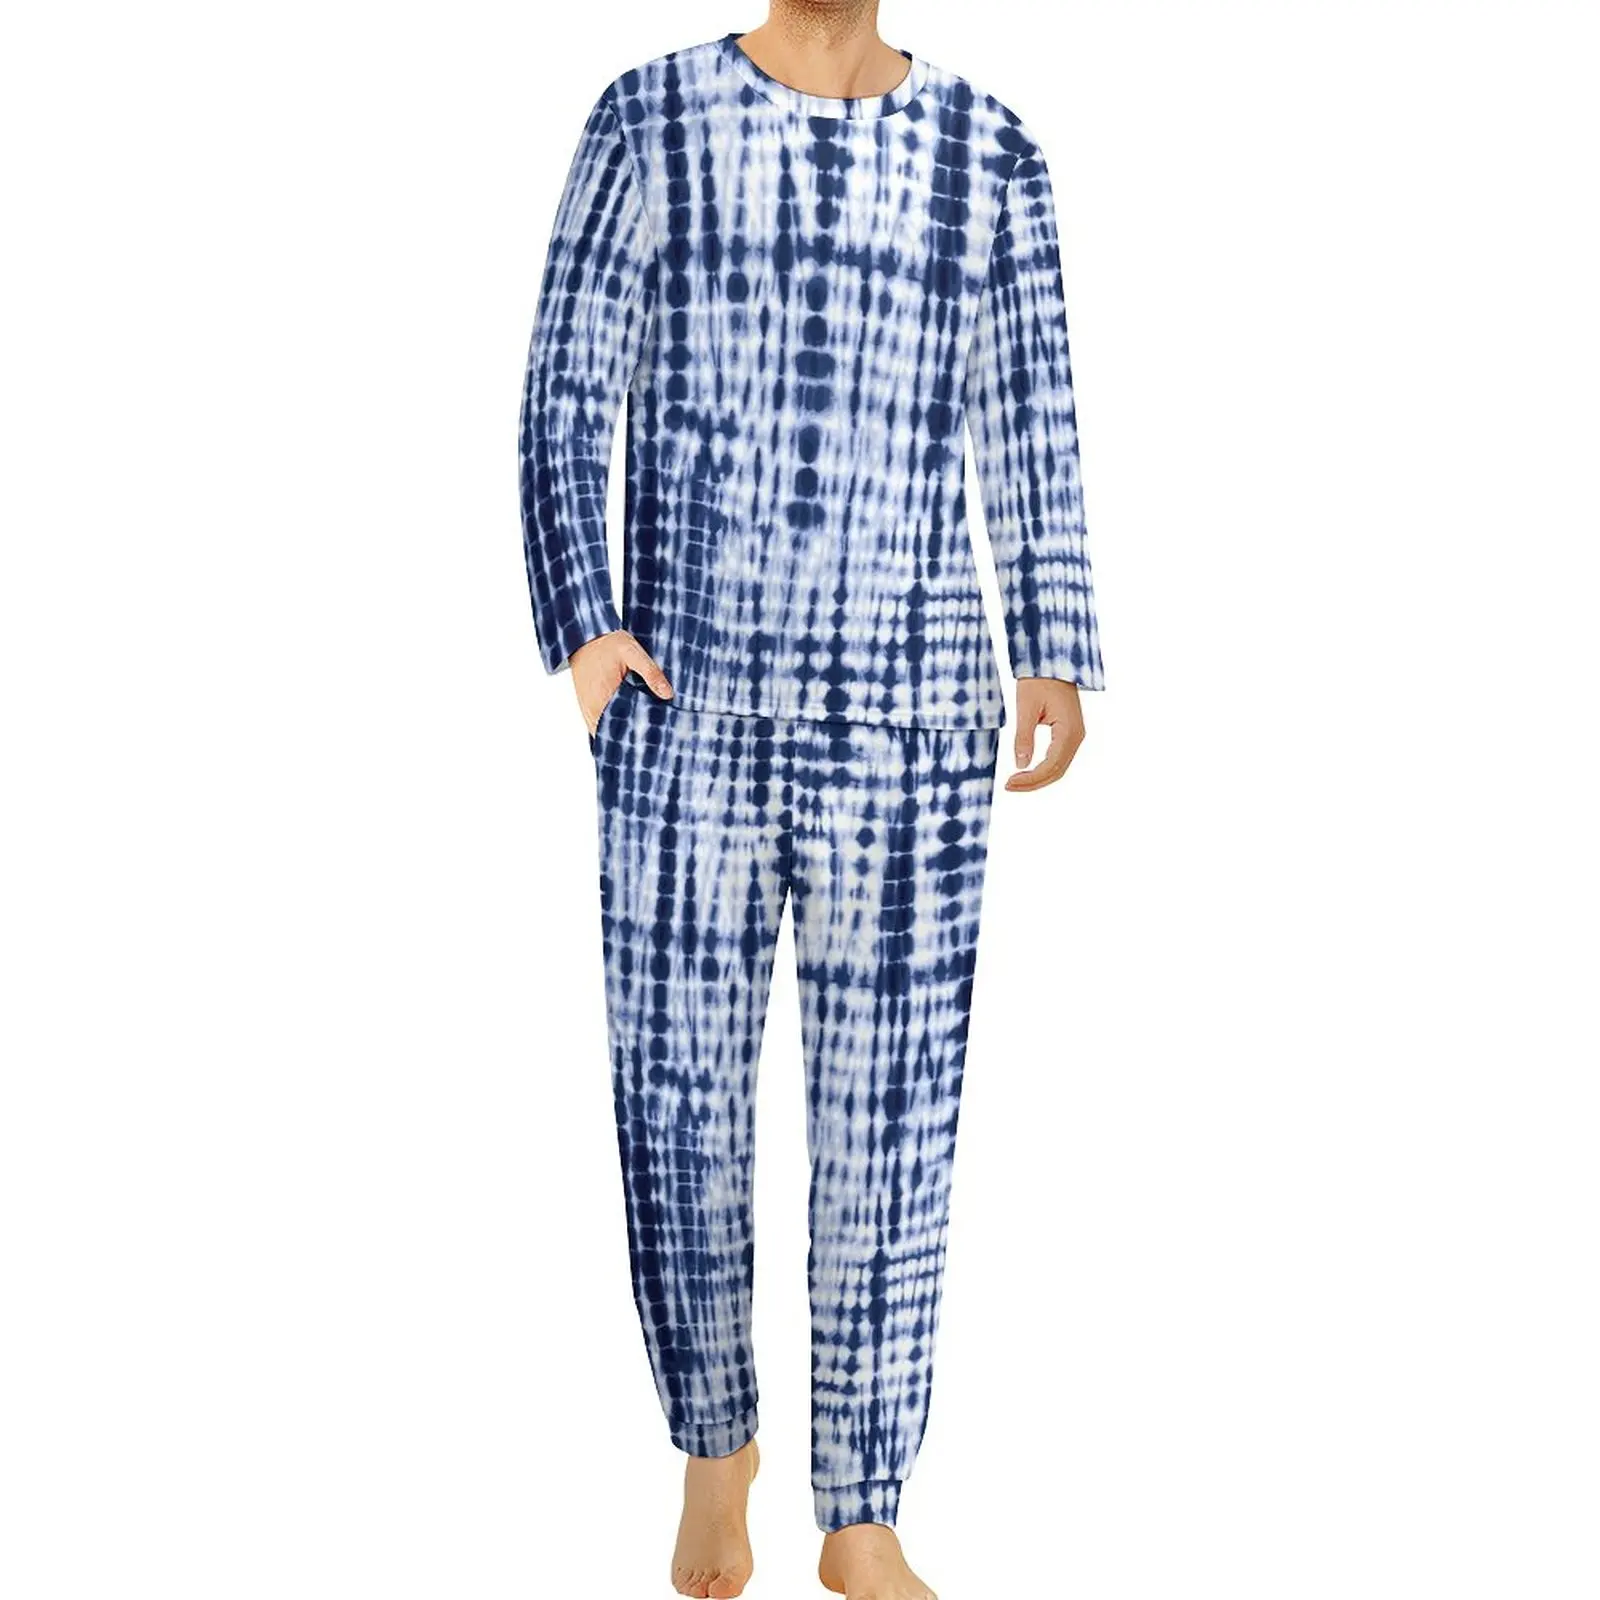 

Пижама Мужская с принтом, теплый пижамный комплект из двух предметов, с длинным рукавом, с графическим принтом, в винтажном стиле, большие размеры, весна